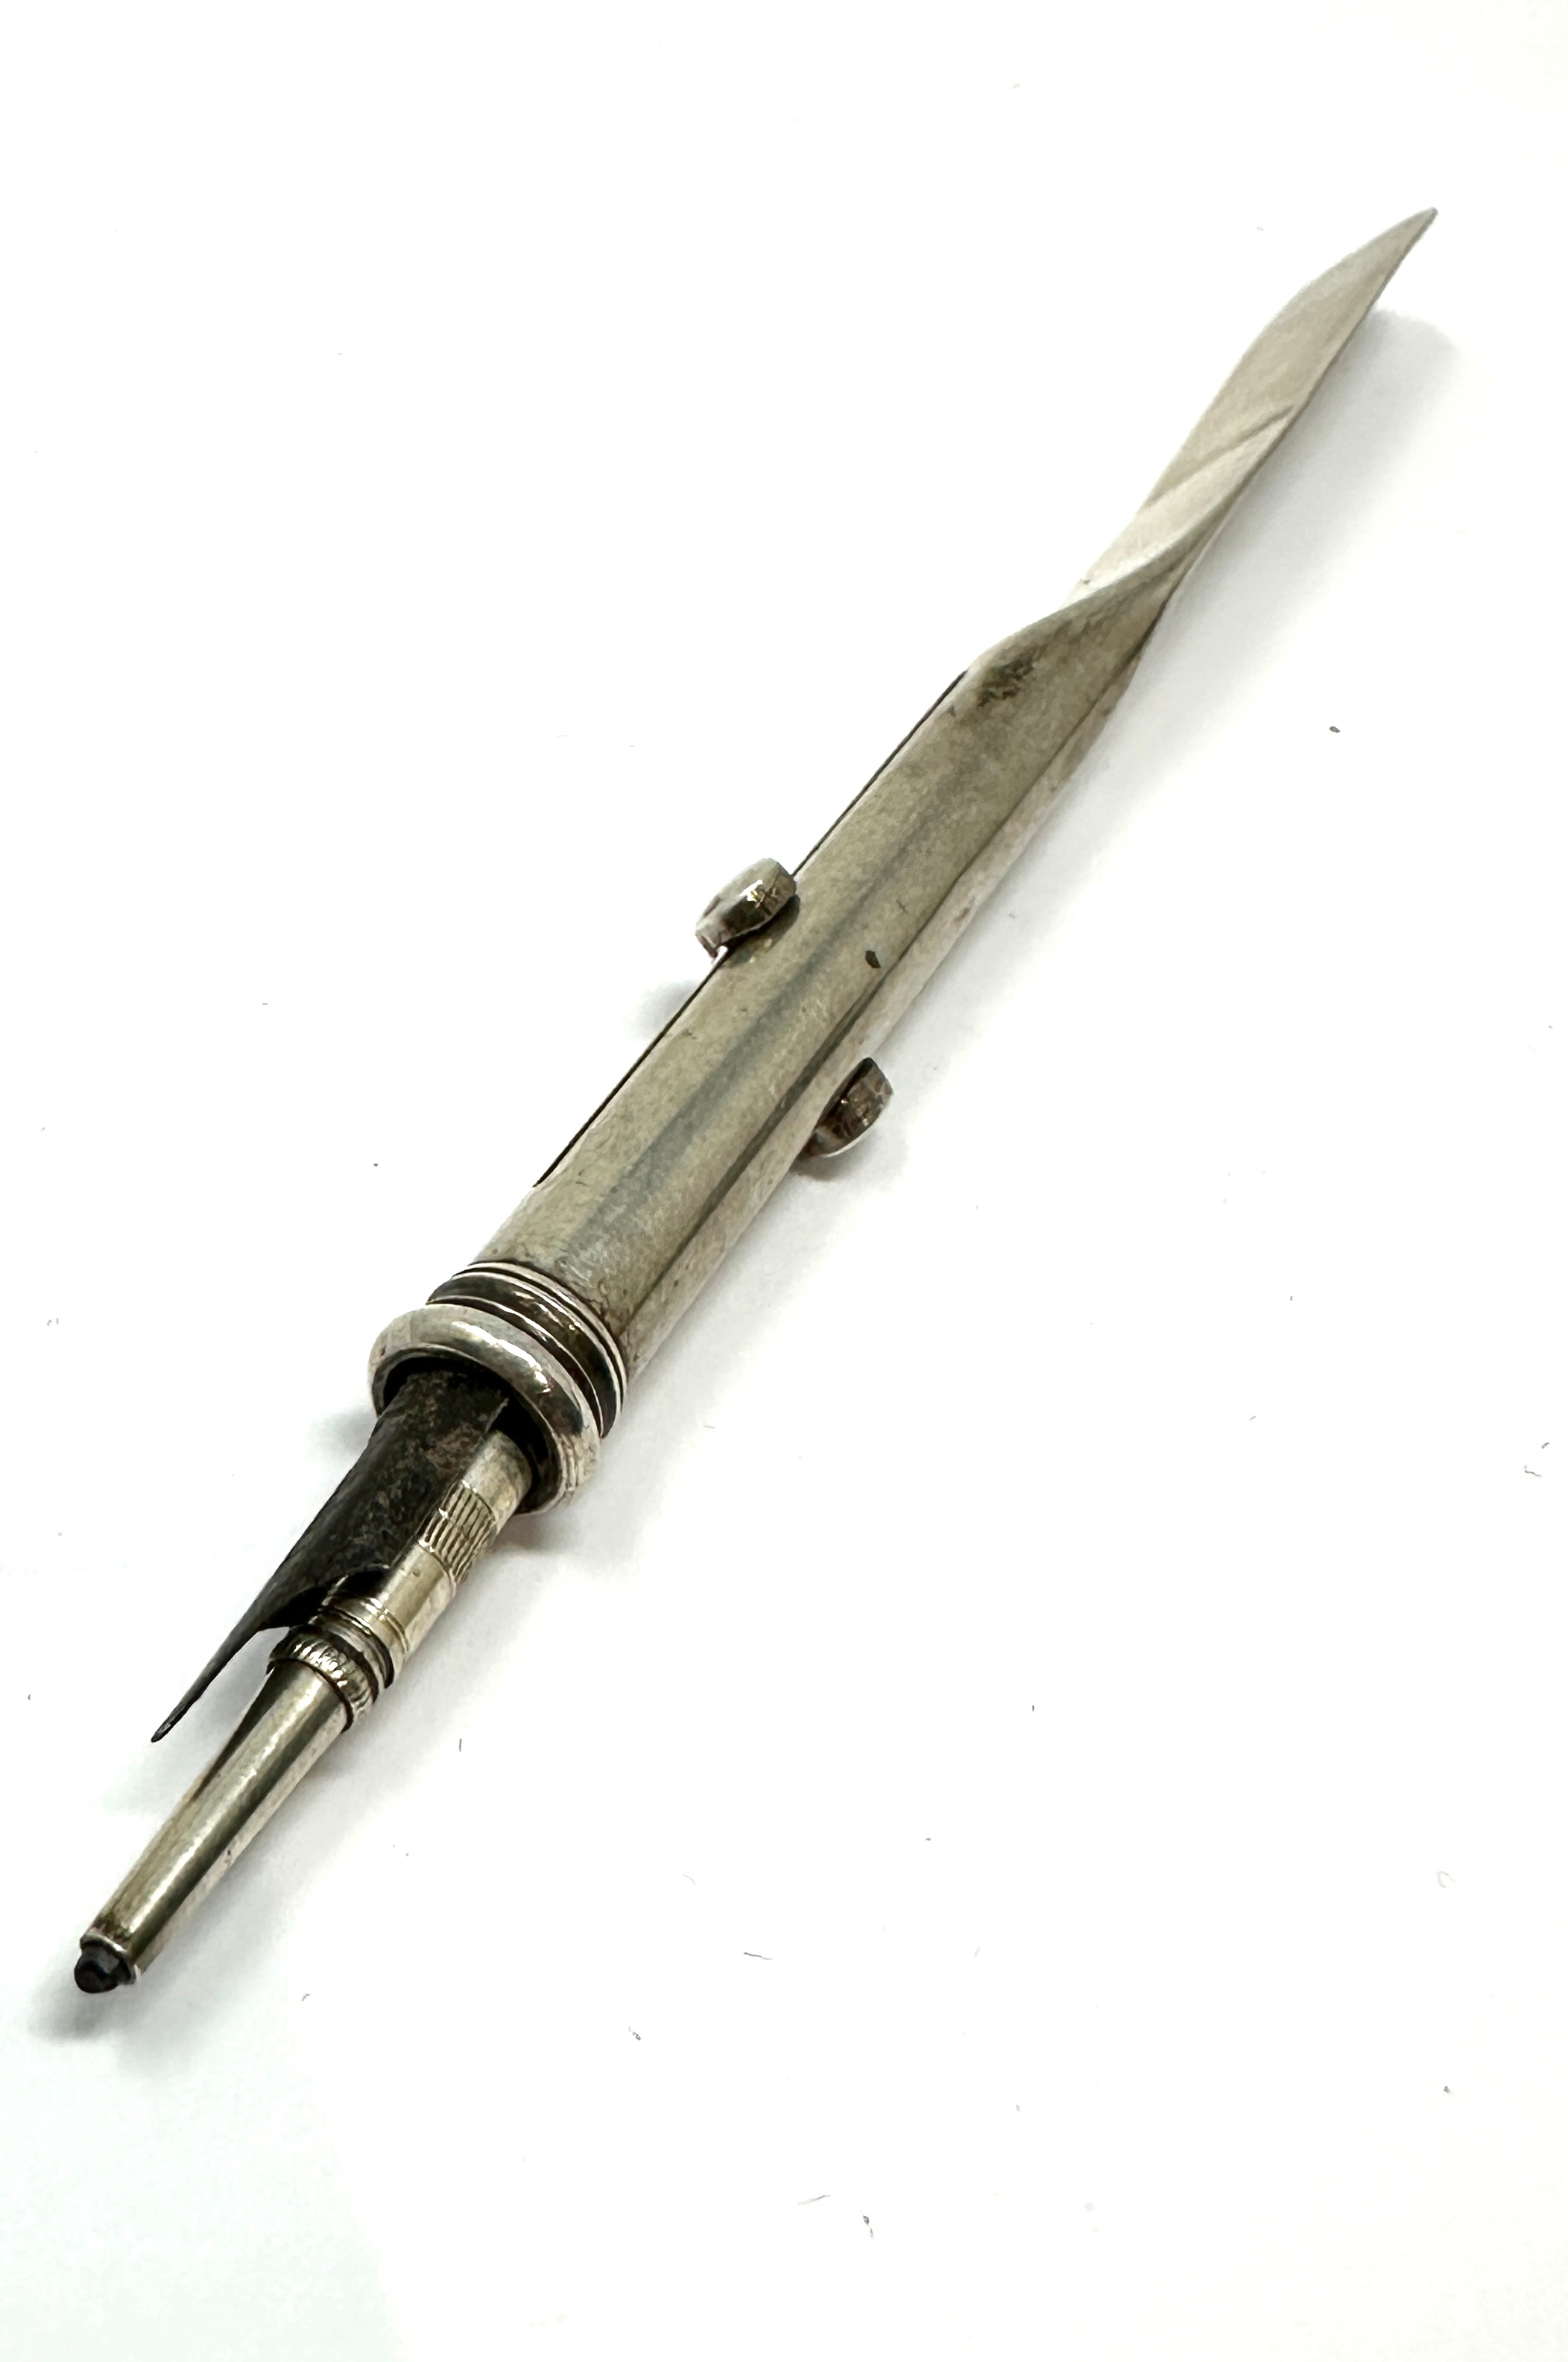 Antique silver sampson Morden expanding pencil & nib pen - Image 2 of 4